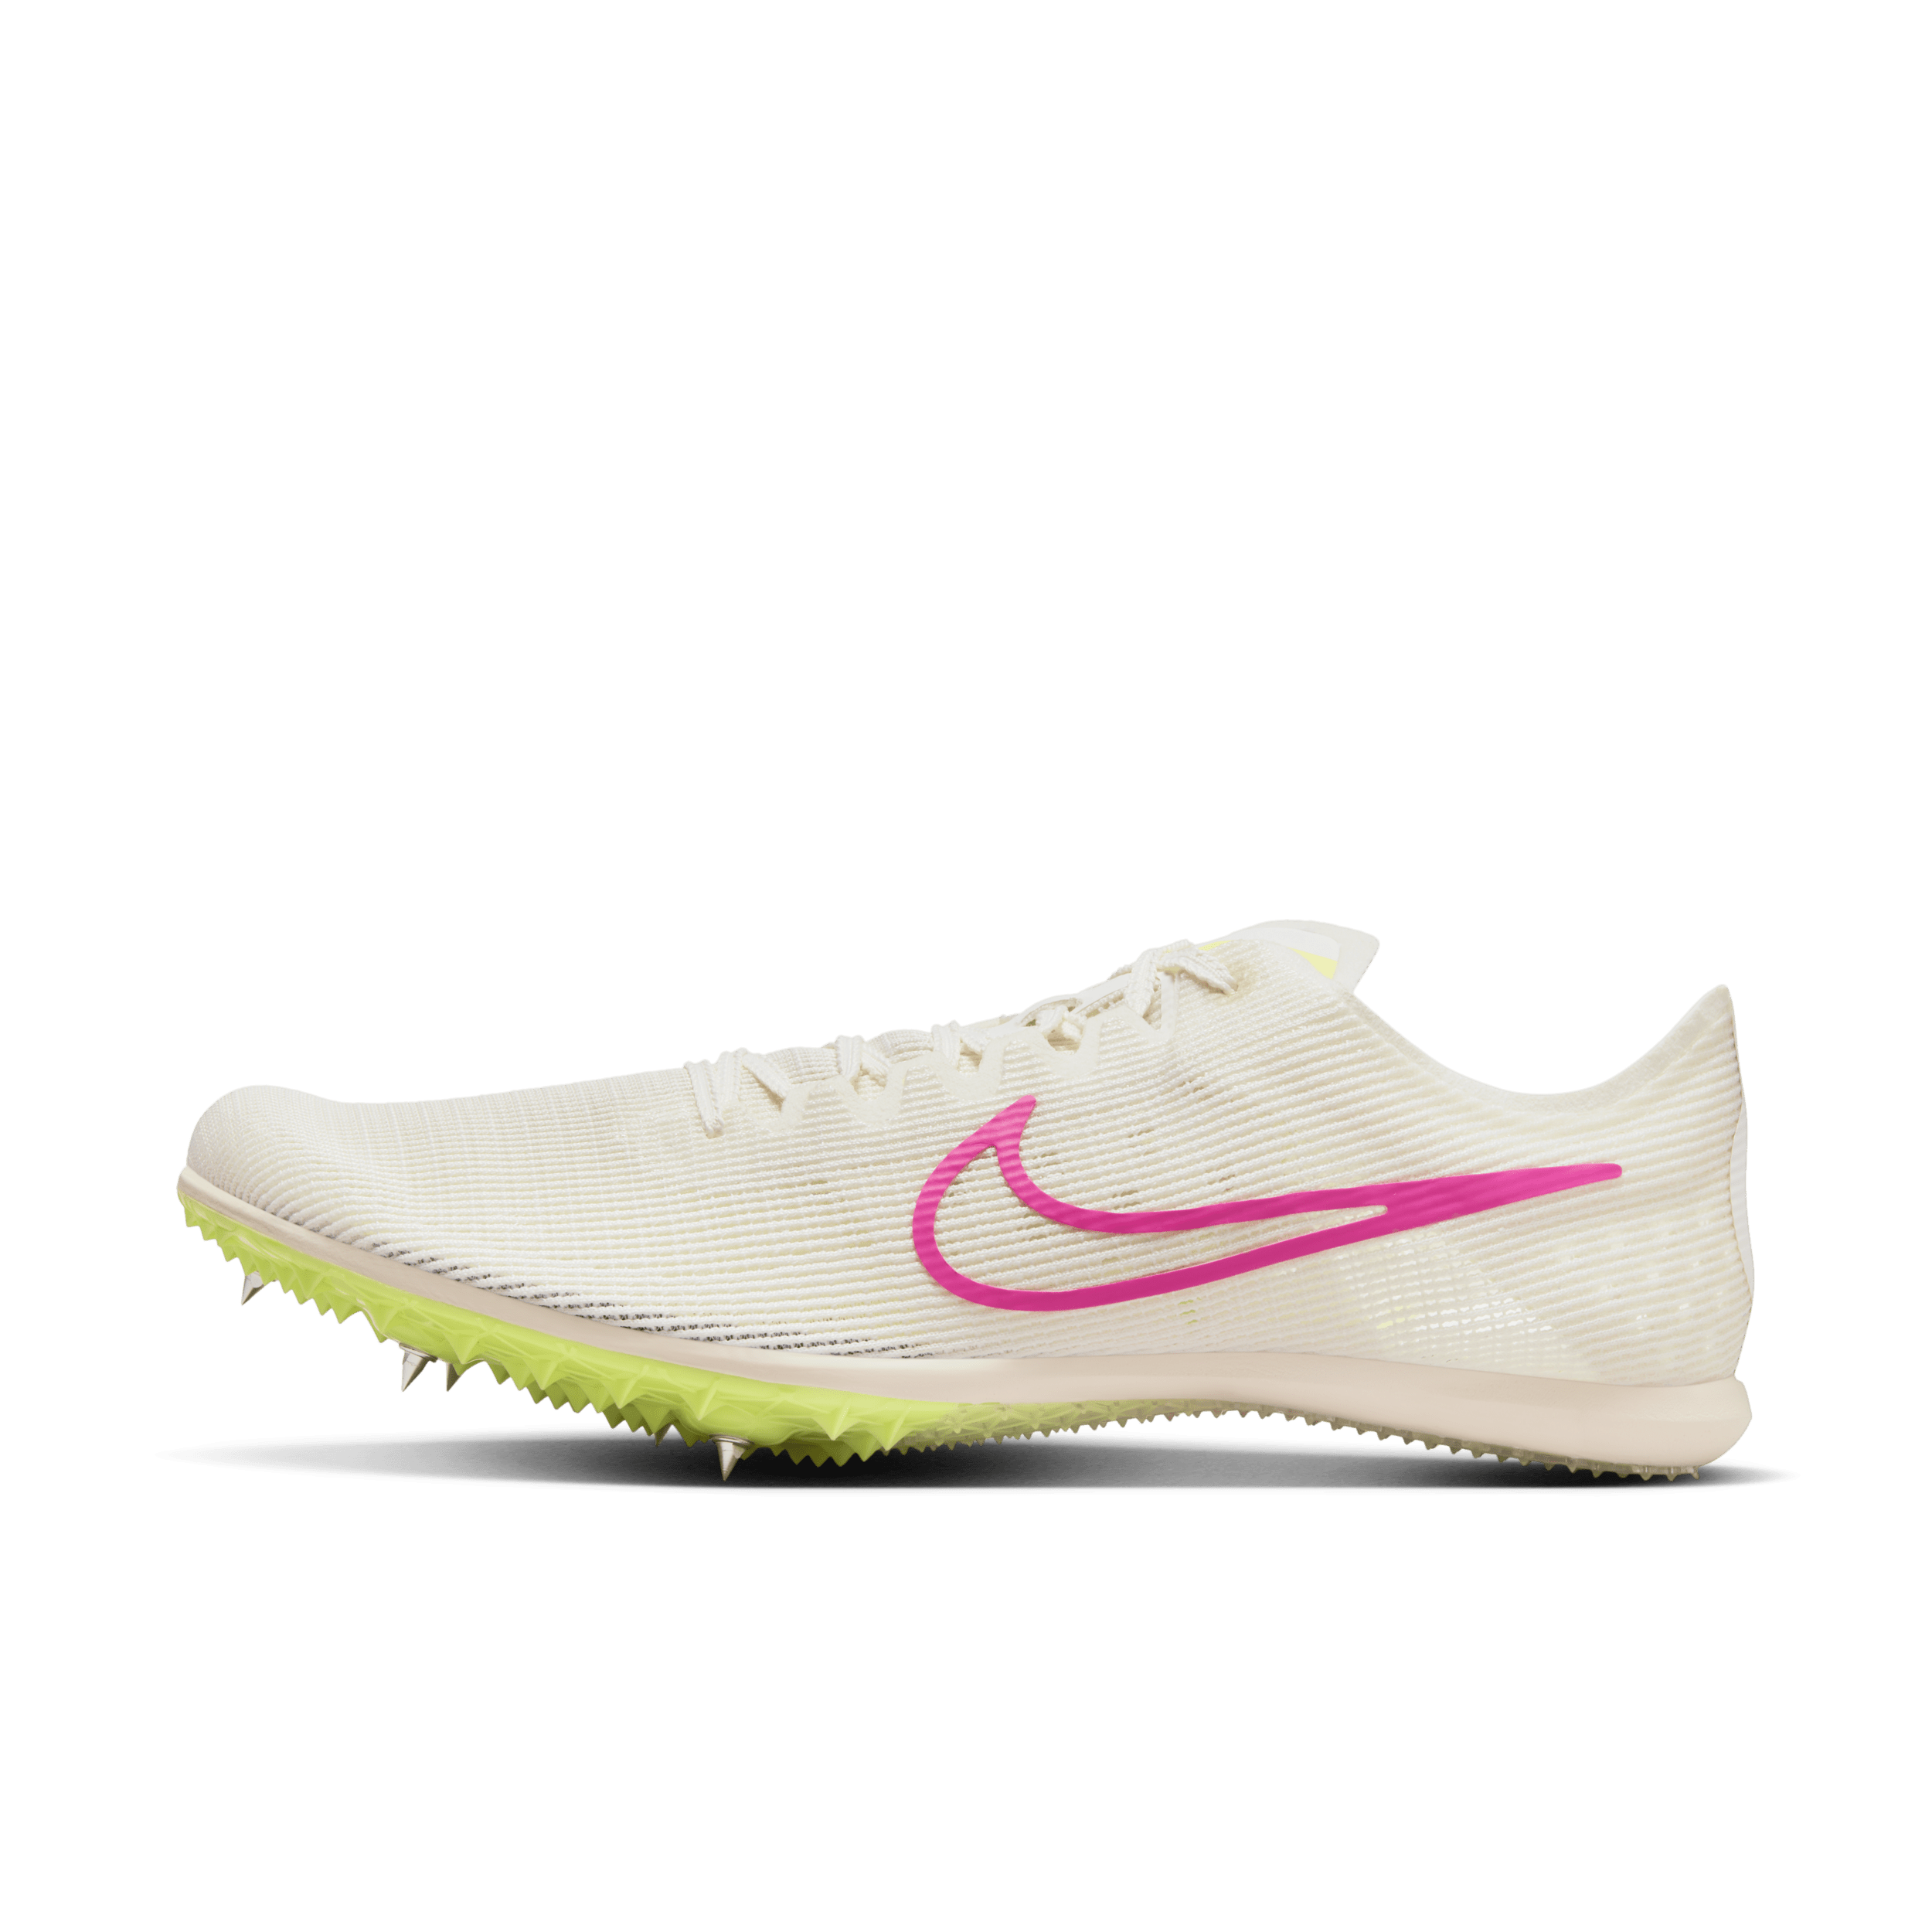 Nike Zoom Mamba 6-pigsko til stadionatletik og distancer - hvid